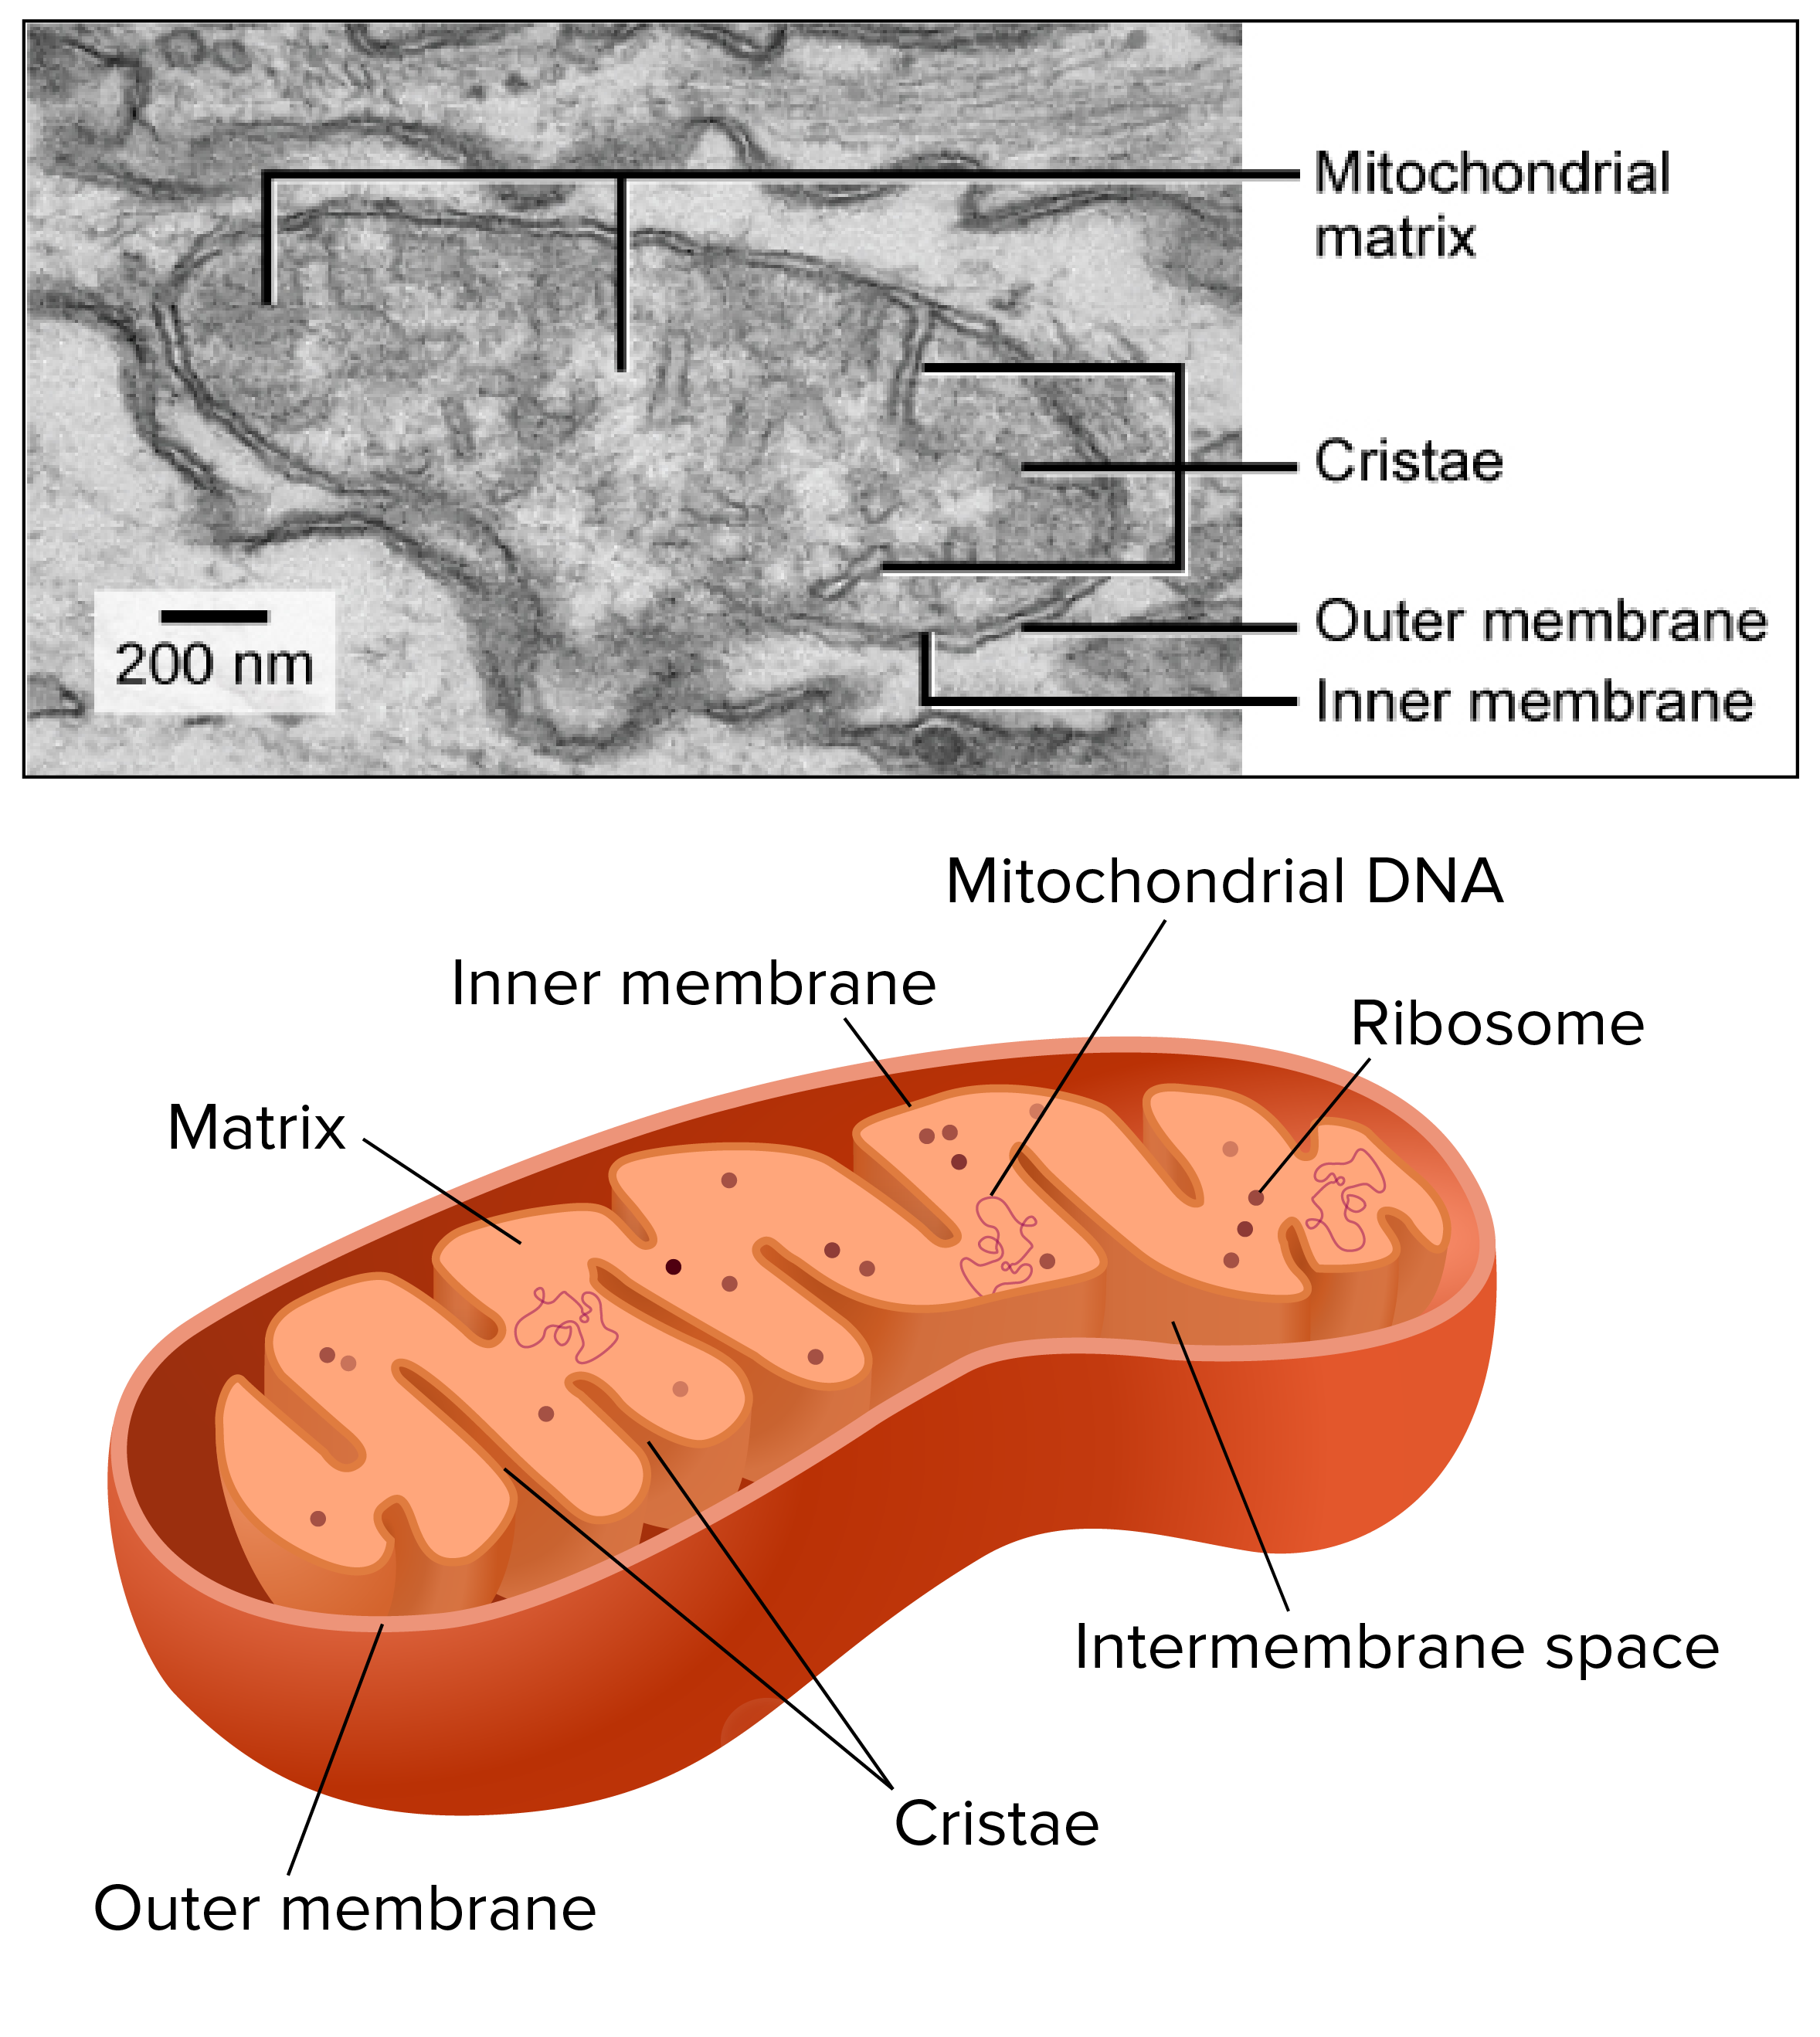 What do cristae do for mitochondria?